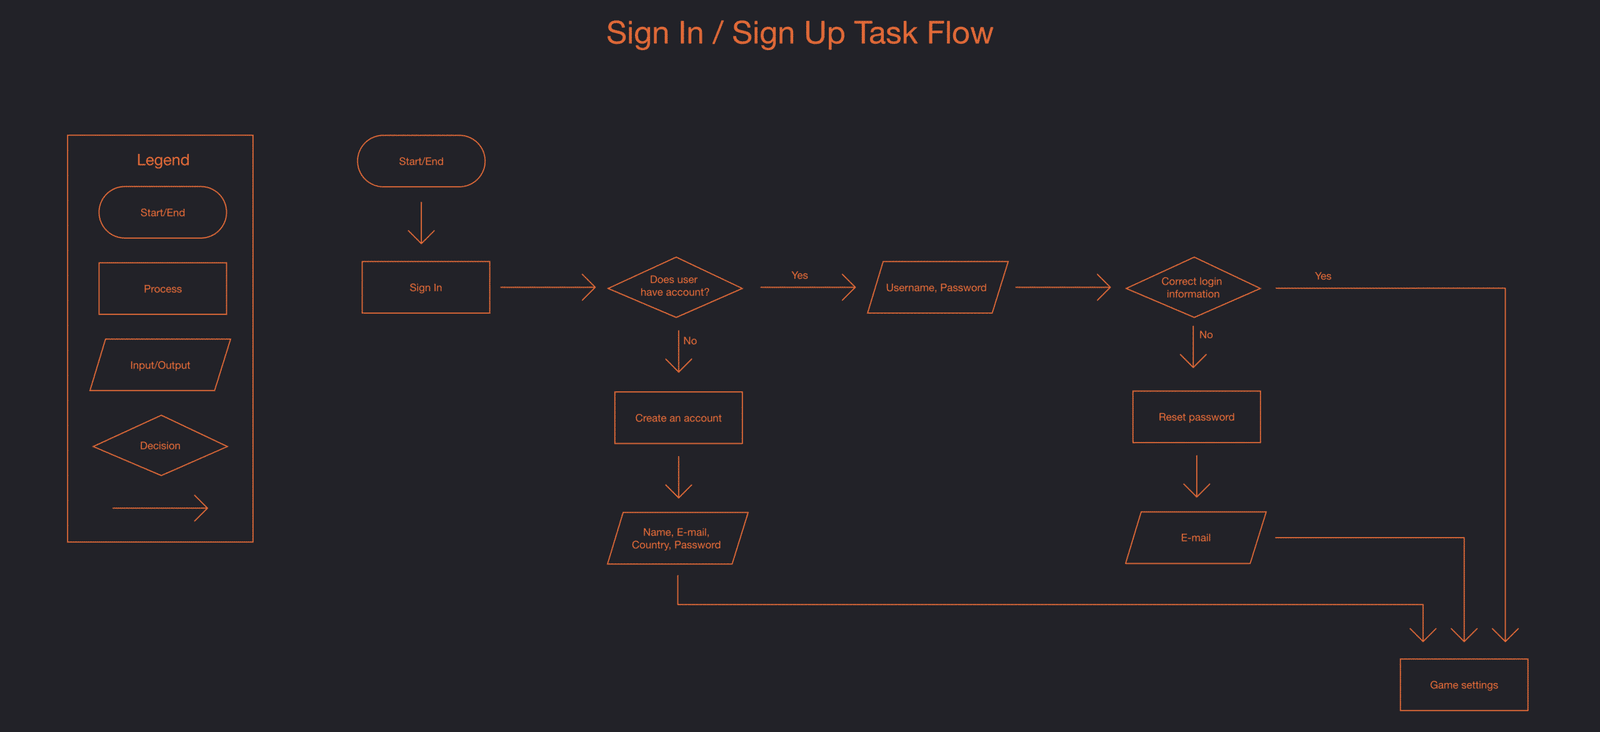 Signintaskflow